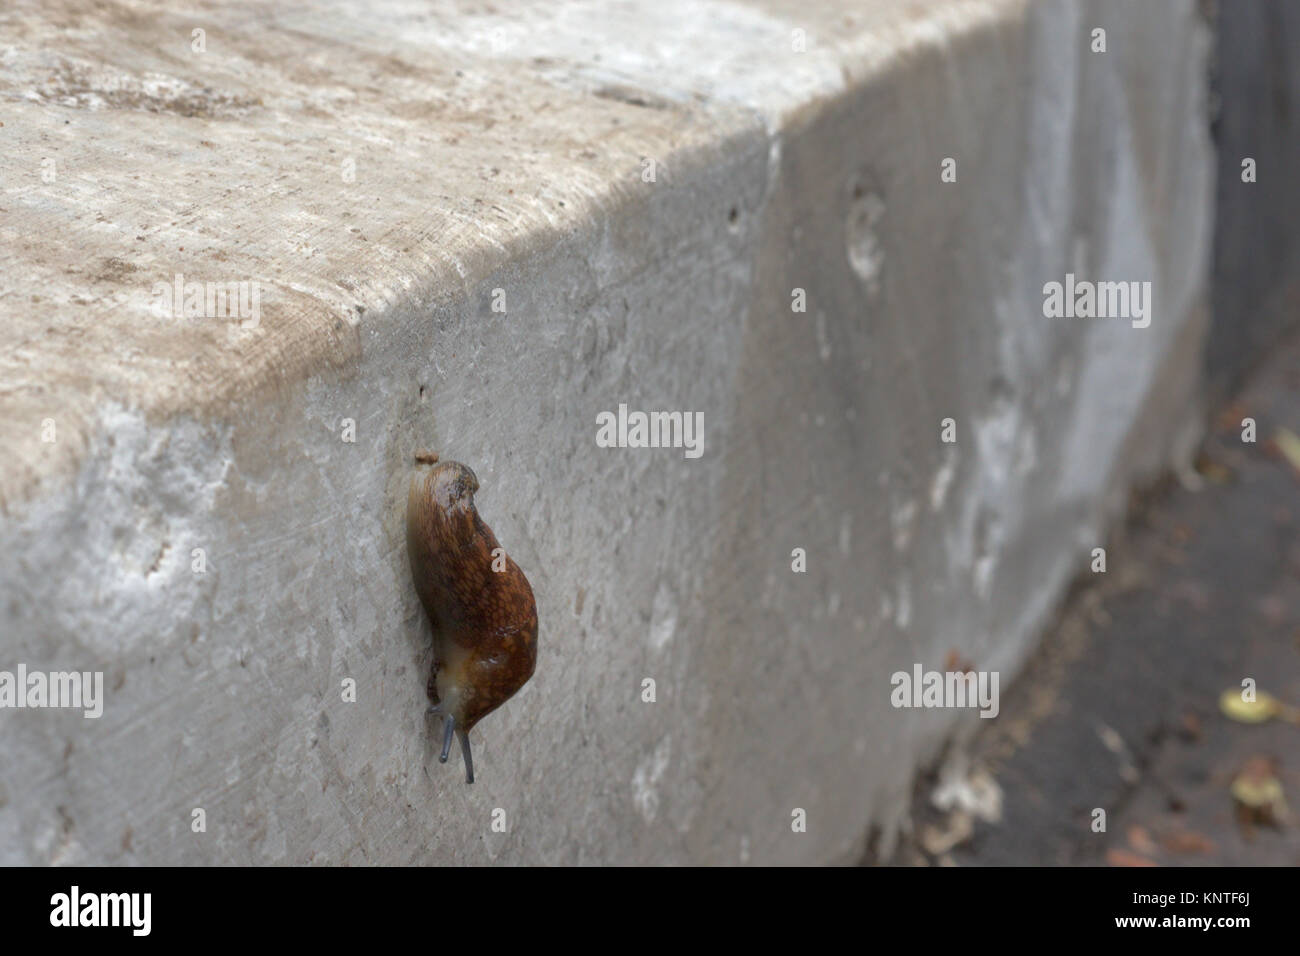 slug on curbstone of road Stock Photo